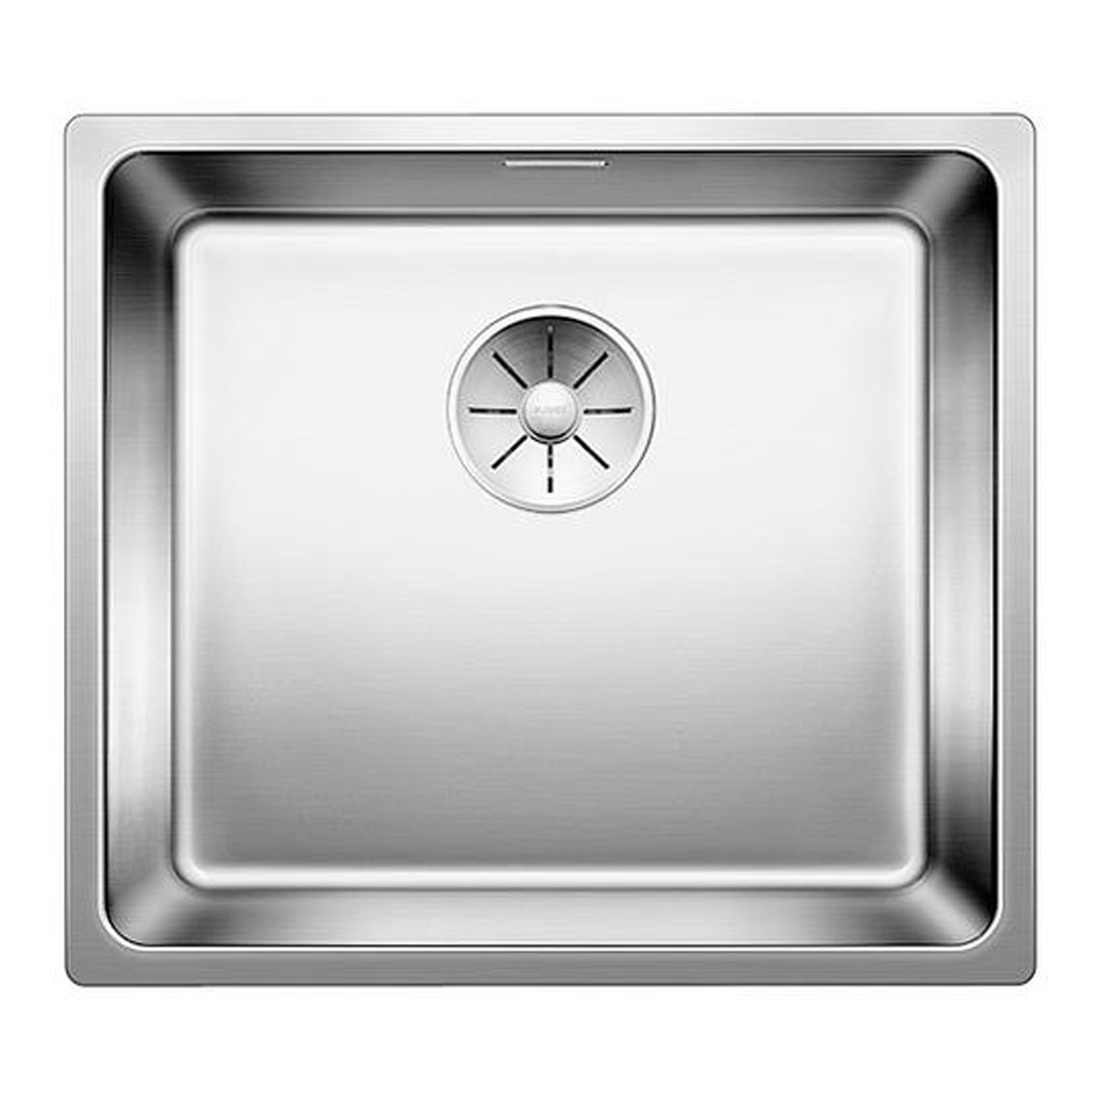 Кухонная мойка Blanco Andano 450-IF полированная сталь кухонная мойка reginox r18 4035 lux okg сталь